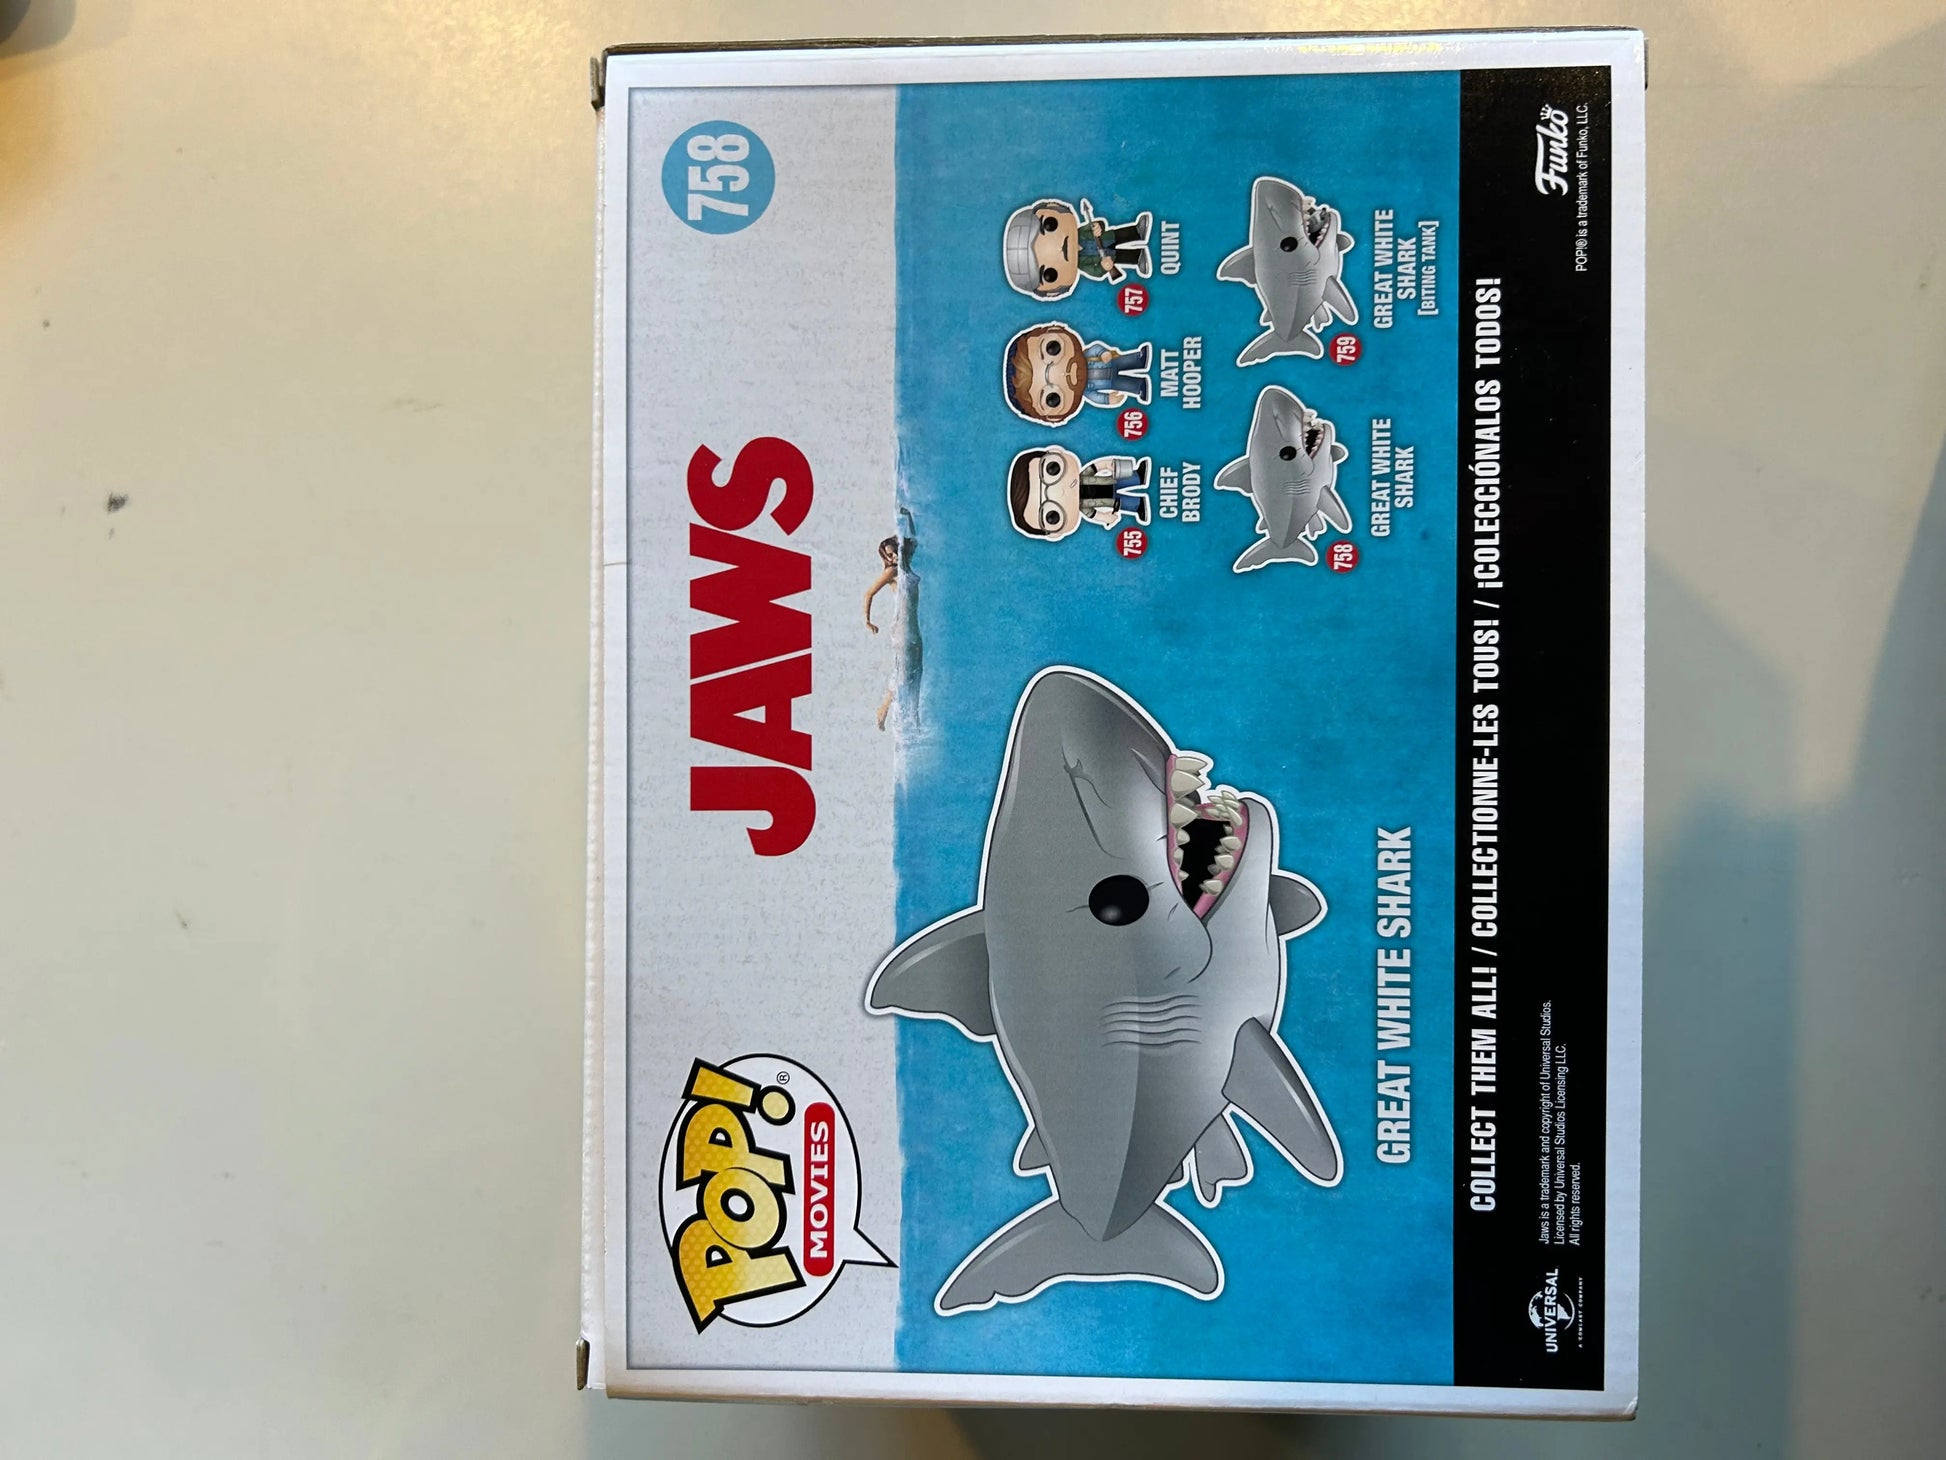 Pop Vinyl Jaws 758 Great White Shark FRENLY BRICKS - Open 7 Days